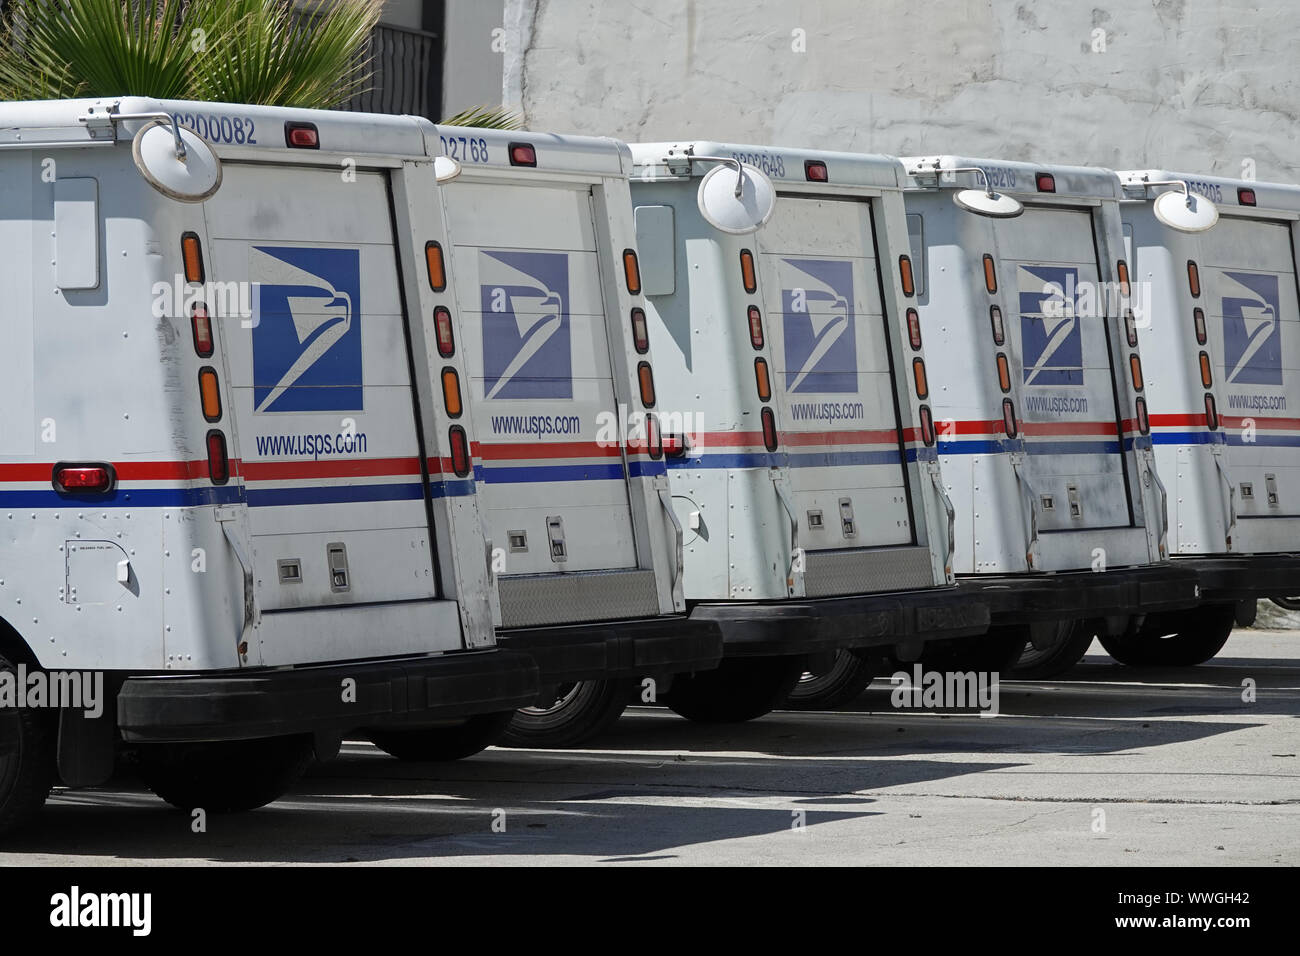 Los Angeles, CA/USA, Nov. 18, 2019: Grumman LLVs (lange Lebensdauer), im Besitz der United States Postal Service (USPS) betrieben werden, werden angezeigt. Stockfoto